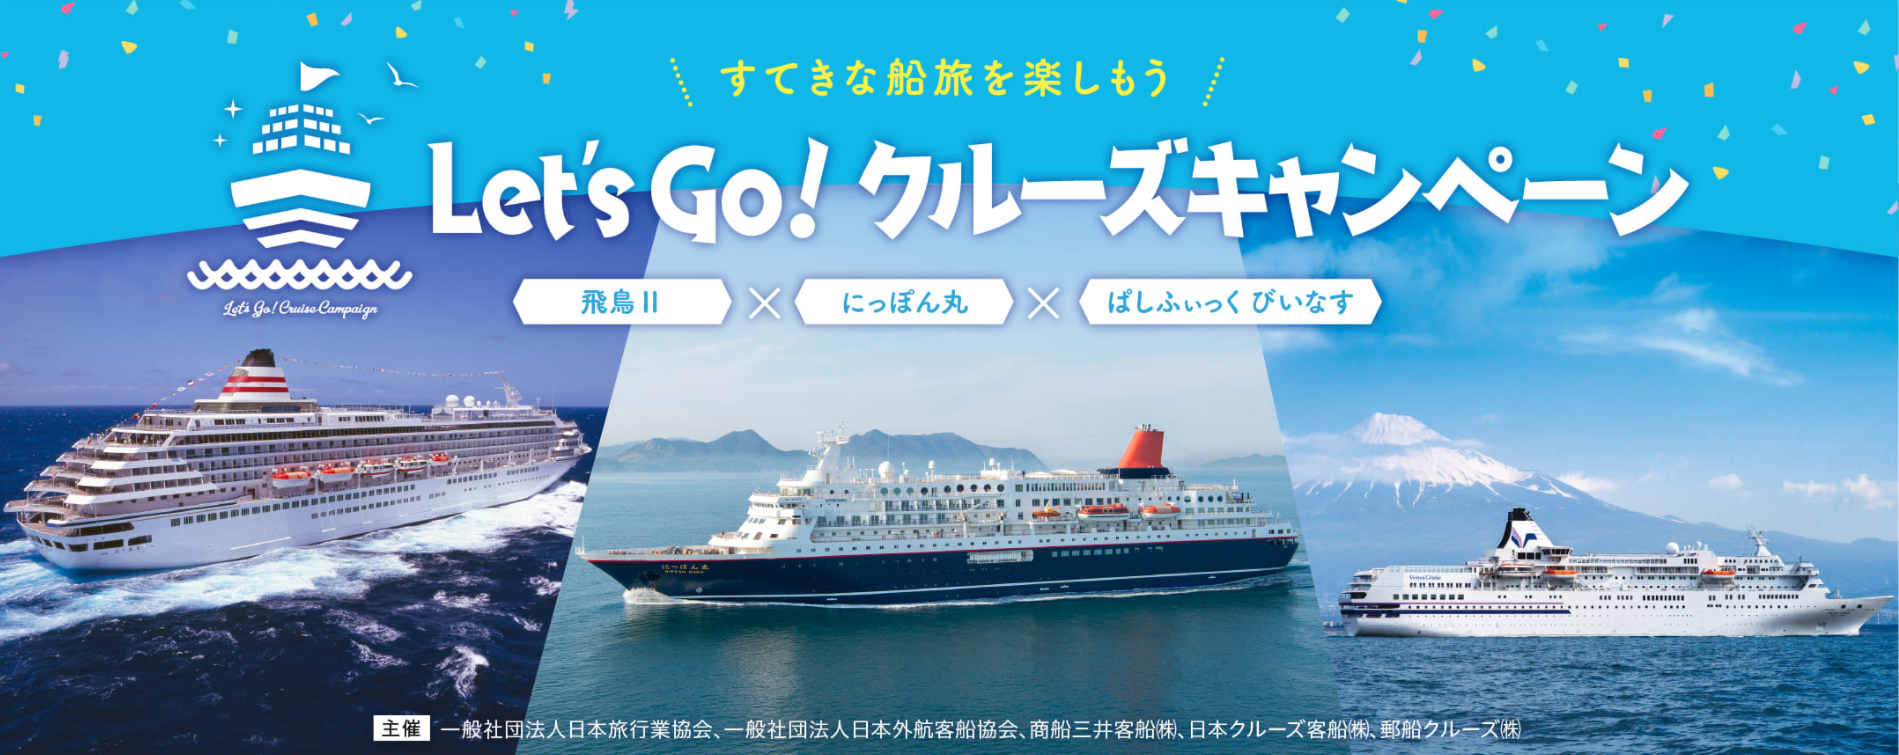 Let S Go クルーズキャンペーン開催中 すてきな船旅を楽しもう クルーズニュース 阪急交通社